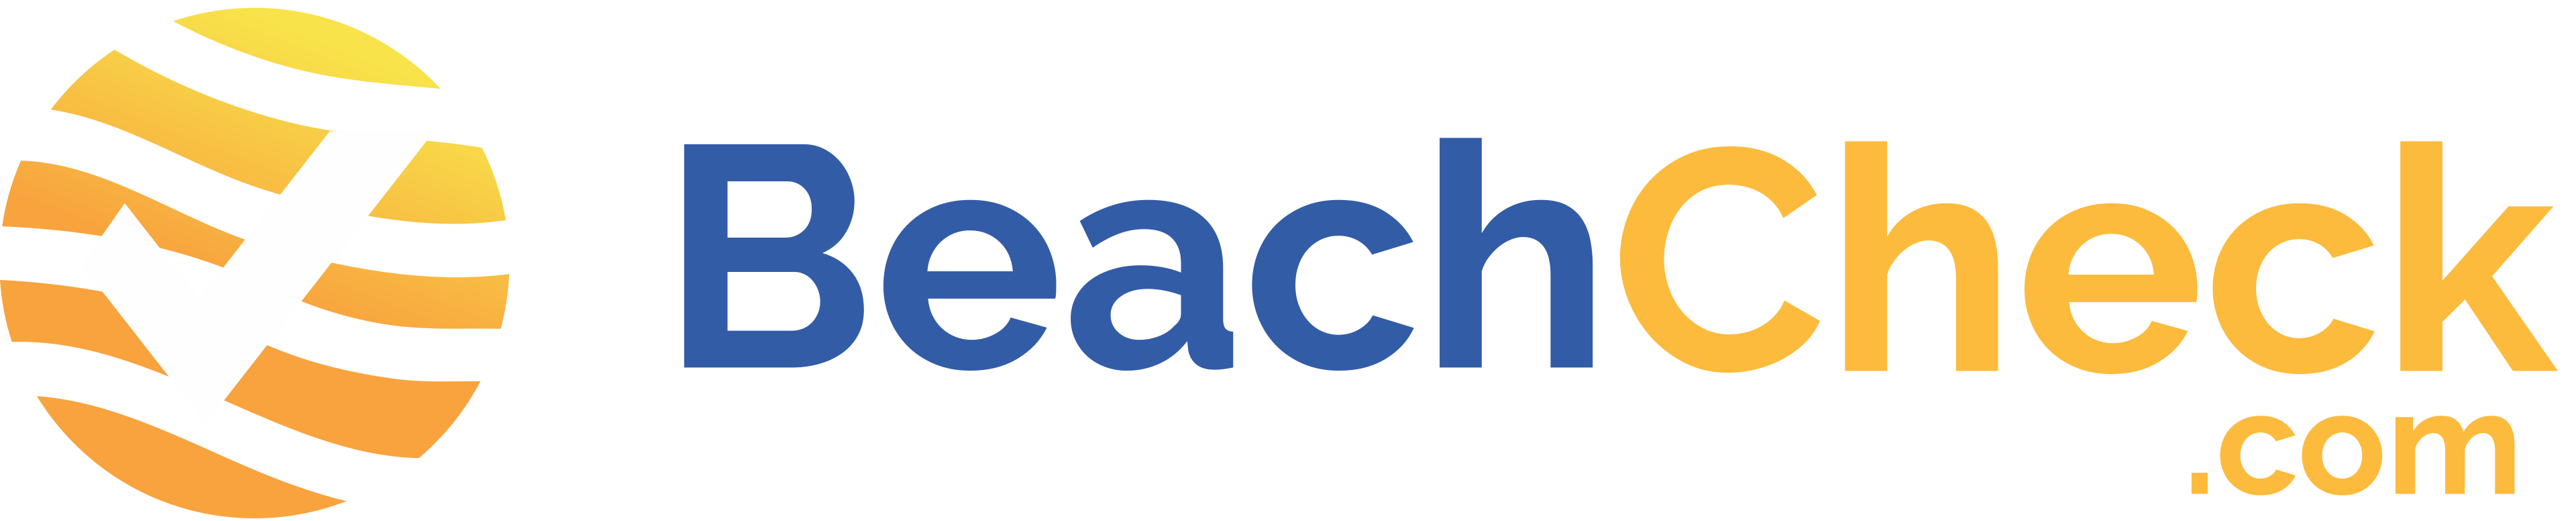 Beachcheck.com logo